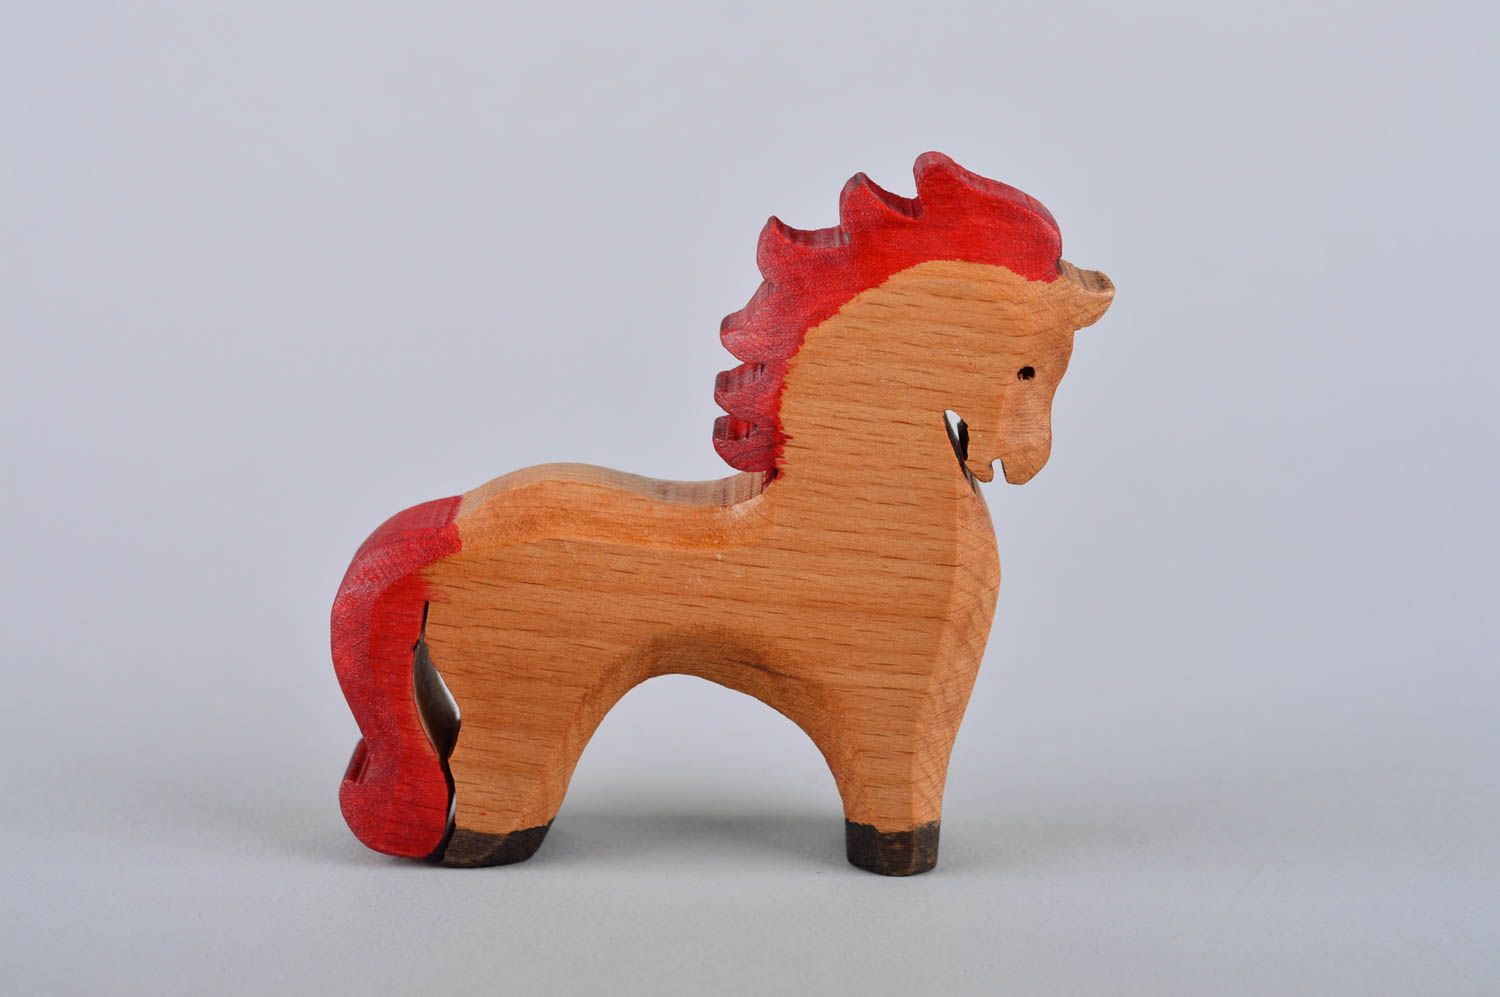 Игрушка для детей игрушка ручной работы игрушка лошадка деревянная маленькая фото 2